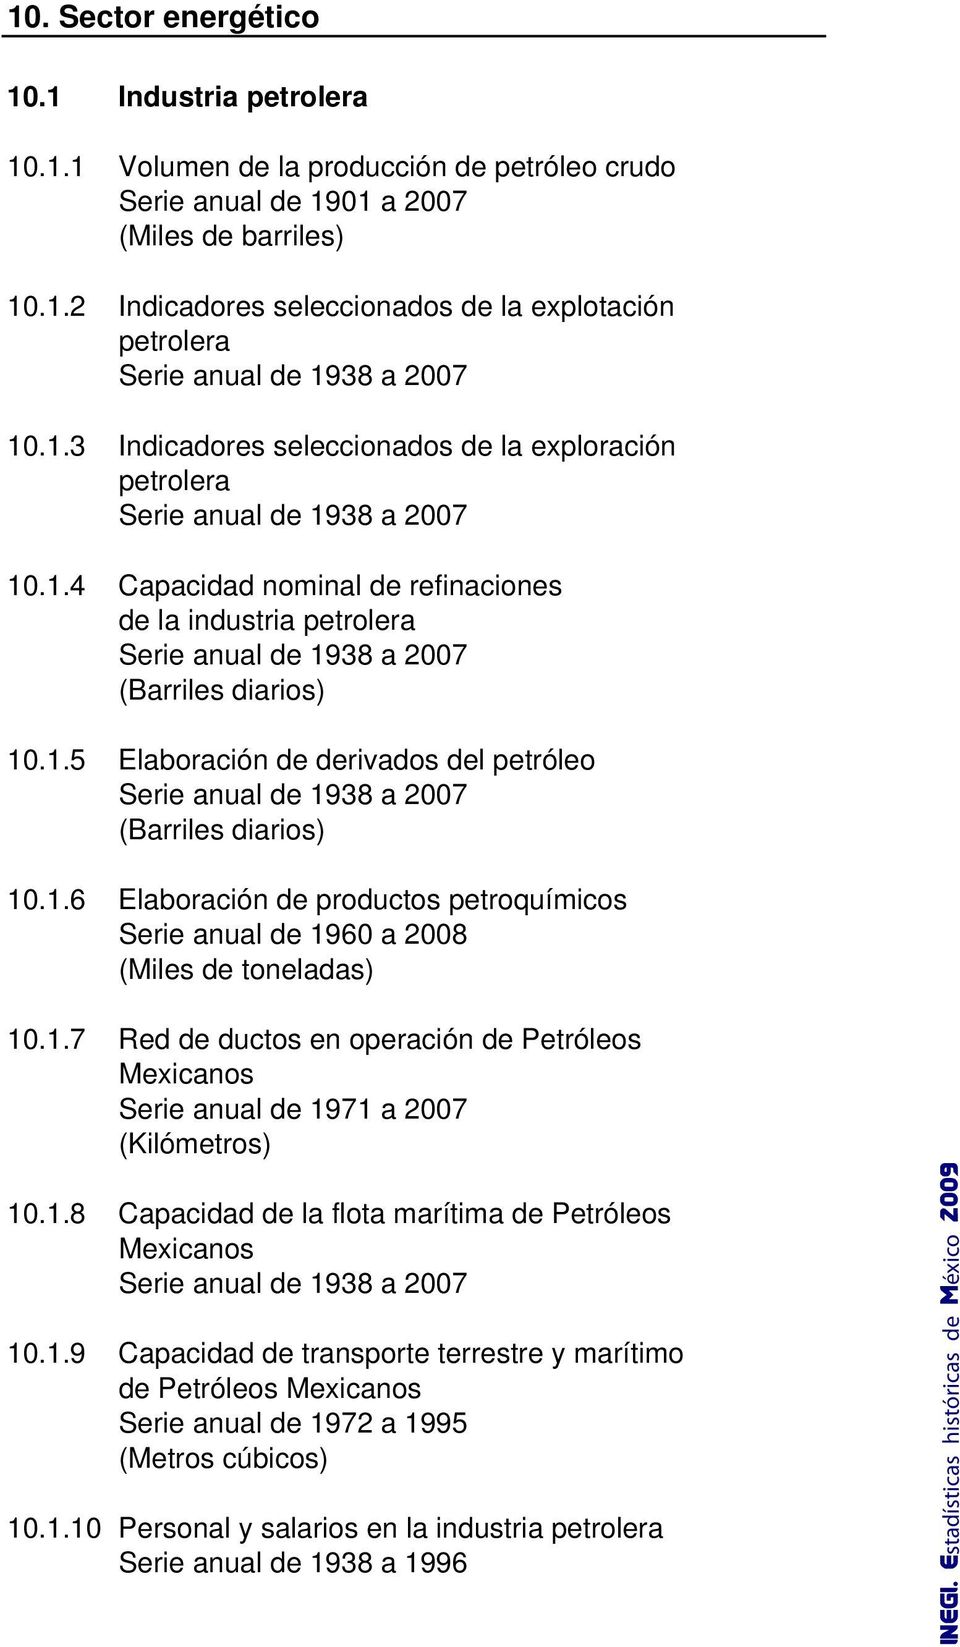 1.5 Elaboración de derivados del petróleo Serie anual de 1938 a 2007 (Barriles diarios) 10.1.6 Elaboración de productos petroquímicos Serie anual de 1960 a 2008 (Miles de toneladas) 10.1.7 Red de ductos en operación de Petróleos Mexicanos Serie anual de 1971 a 2007 (Kilómetros) 10.